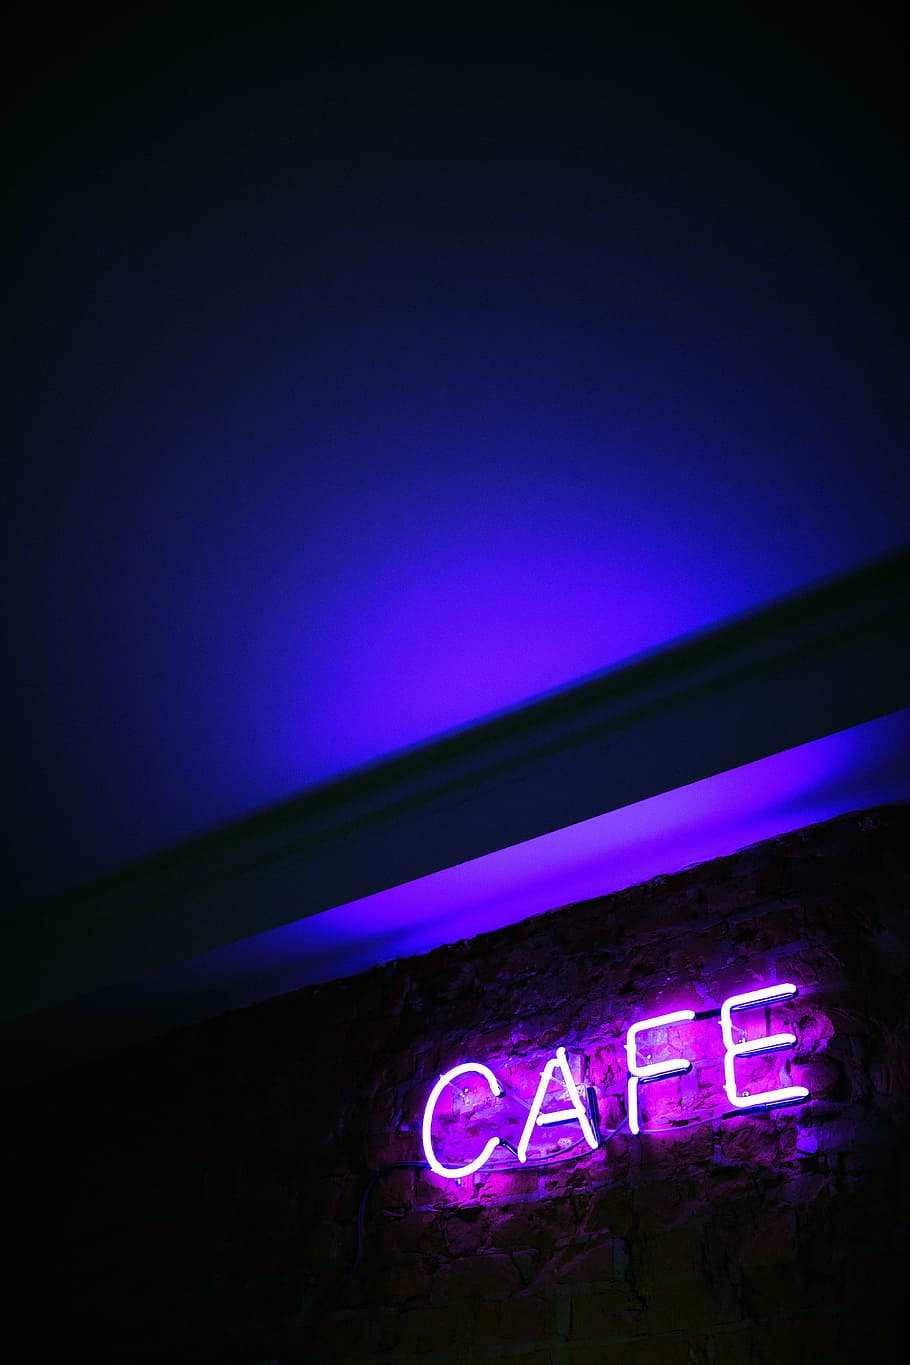 CAFE neon signage mounted on wall, Cafe LED signage, blue, purple